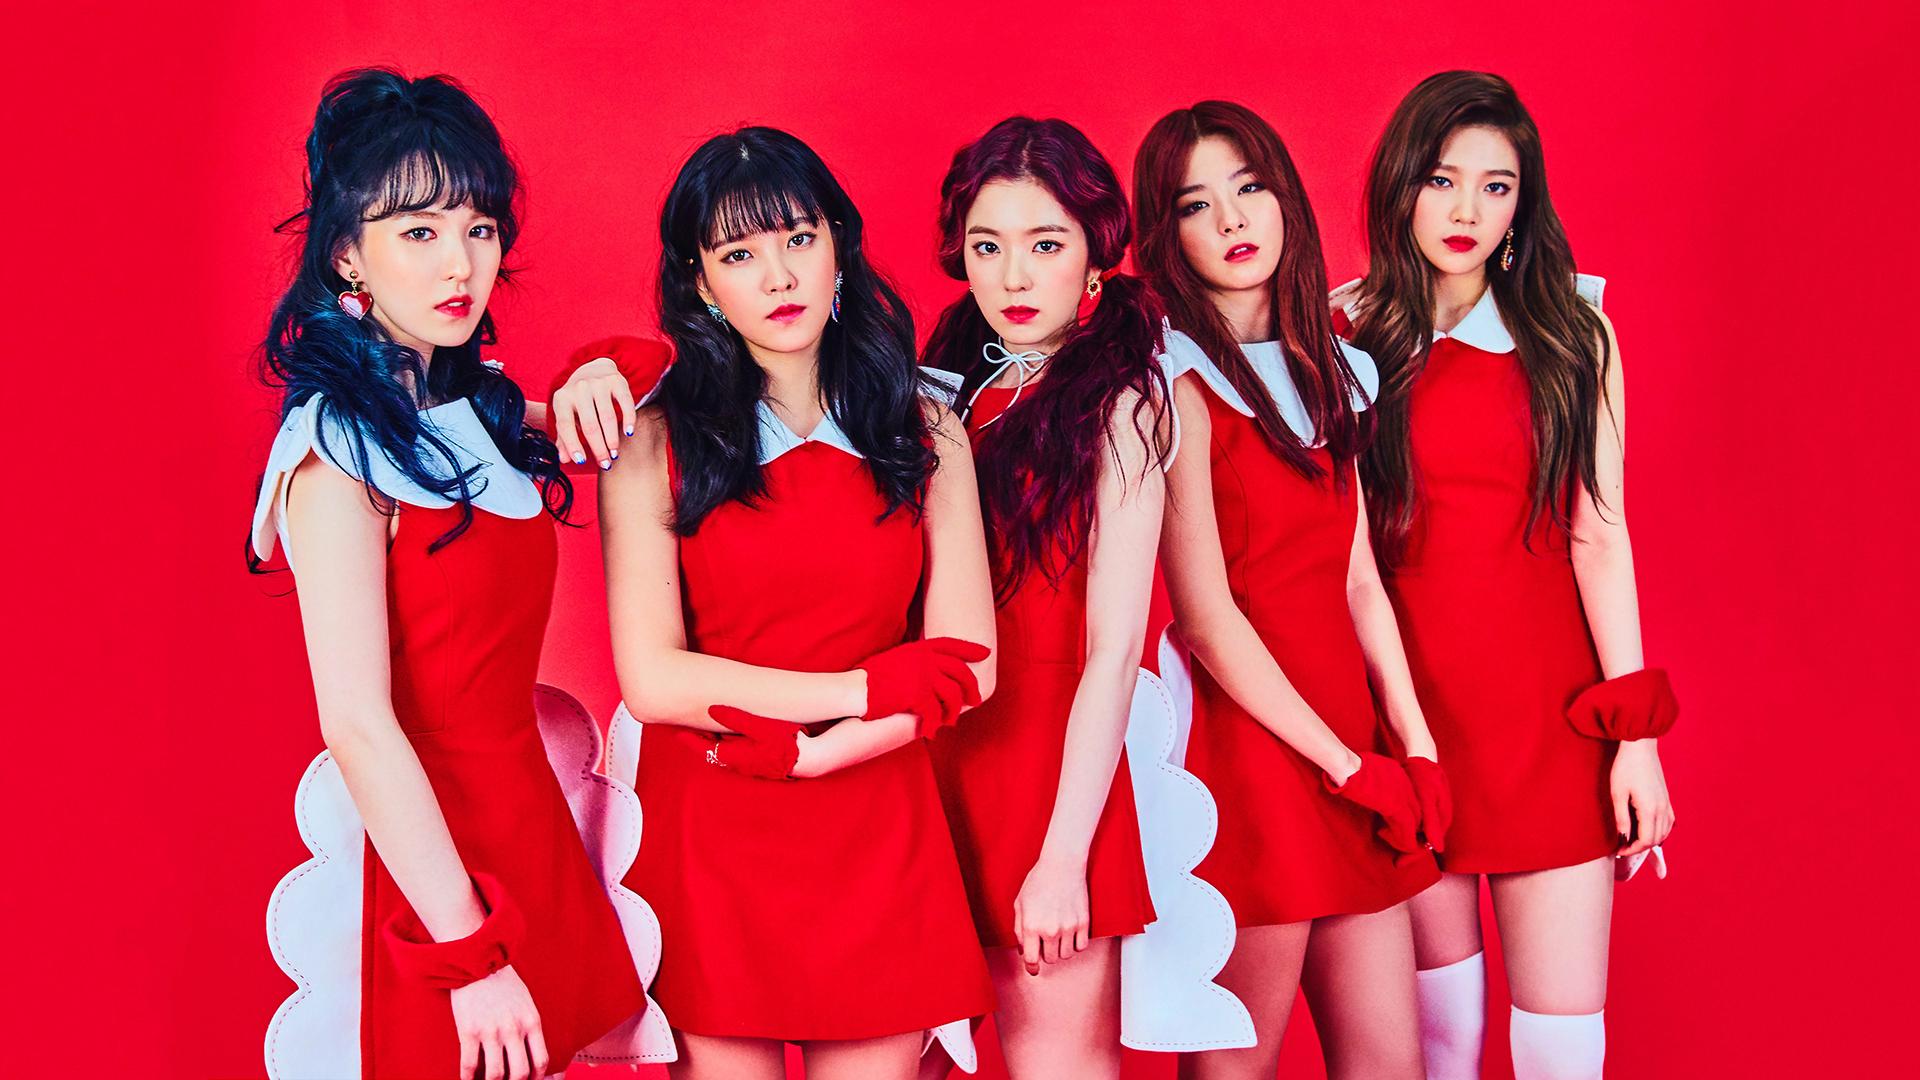 Red Velvet Wallpapers - Top Free Red Velvet Backgrounds - WallpaperAccess